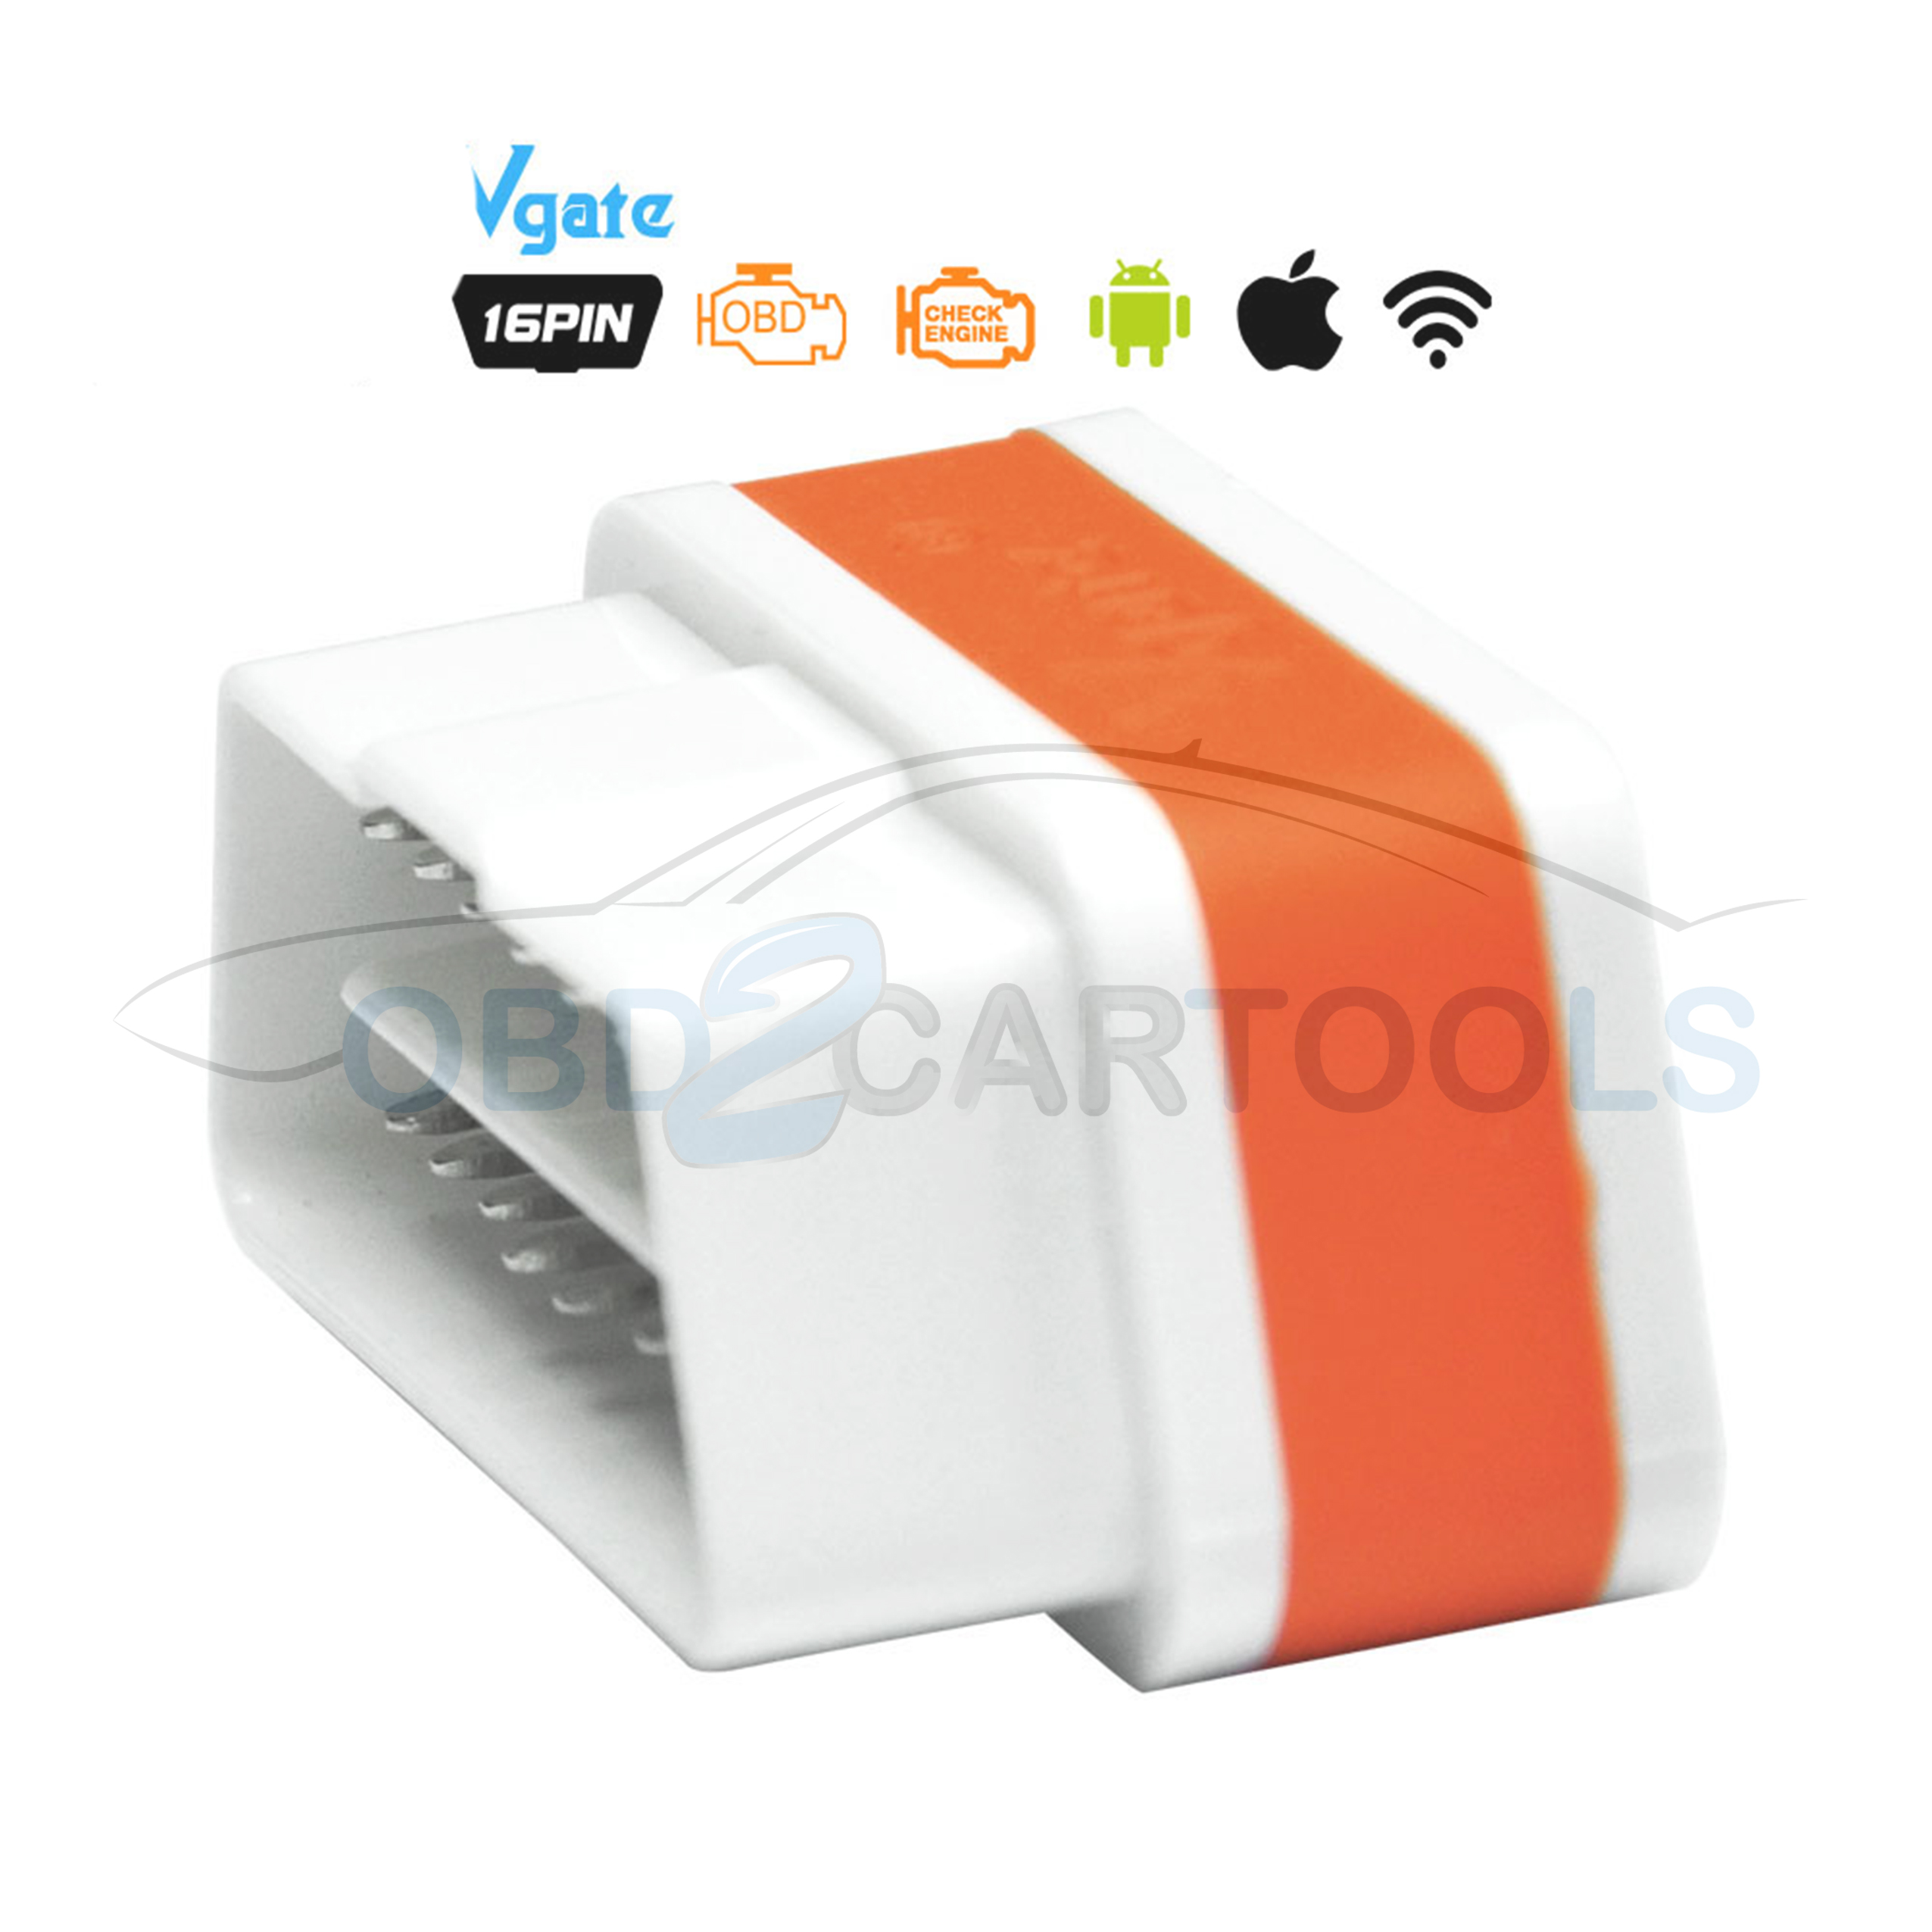 Product image for Original Vgate Super Speed iCar2 ELM327 OBD2 scanner WiFi Version White